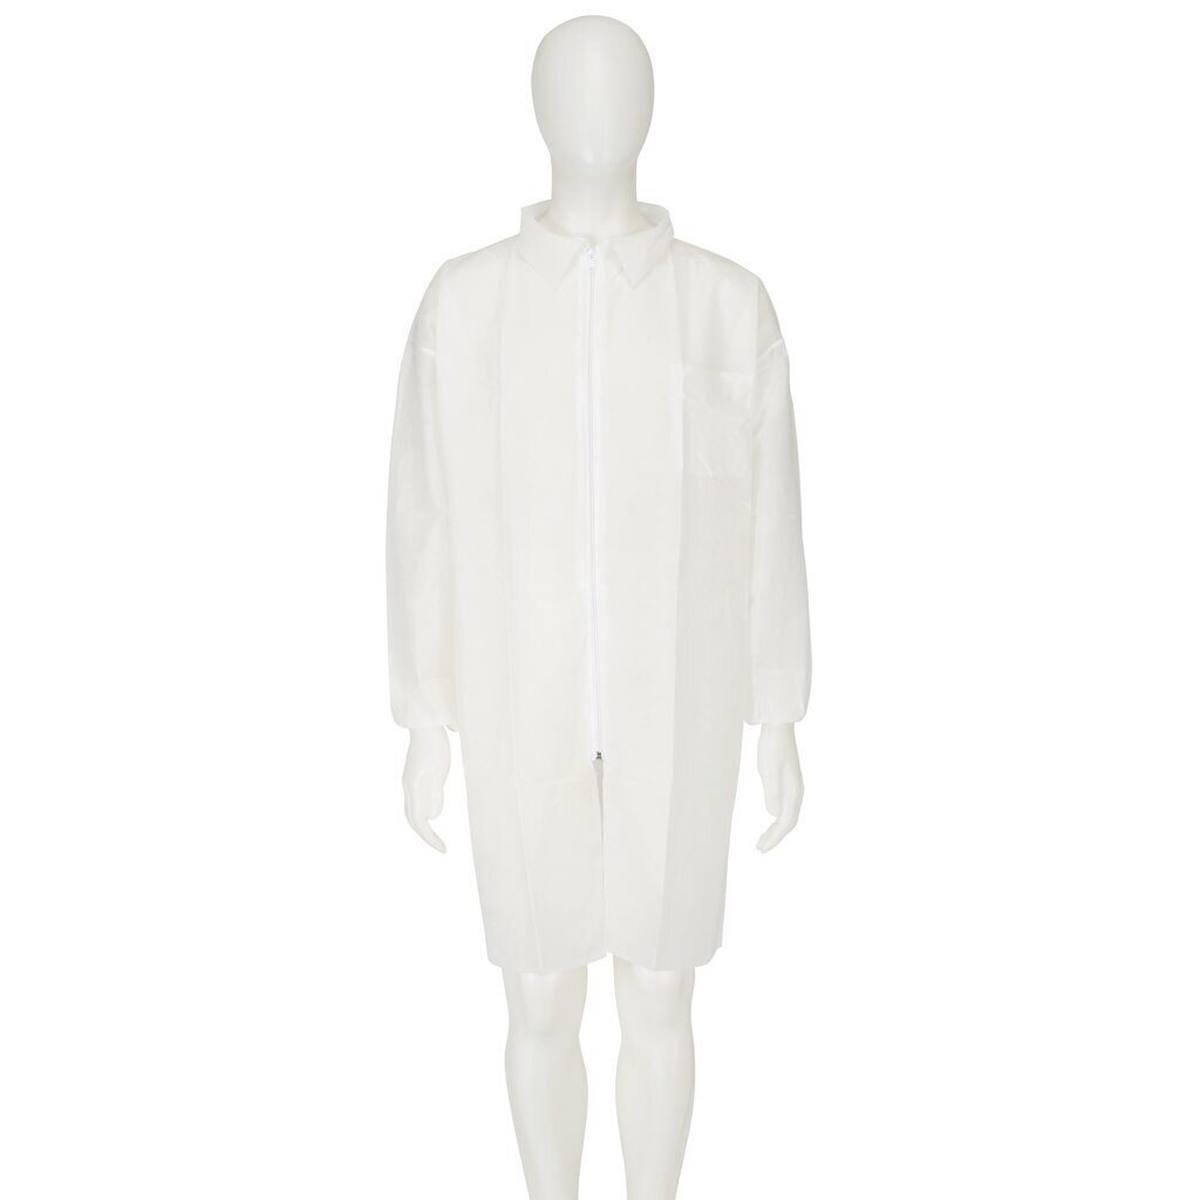 3M 4400 Manteau, blanc, taille M, matière 100% polypropylène, respirant, très léger, avec fermeture éclair